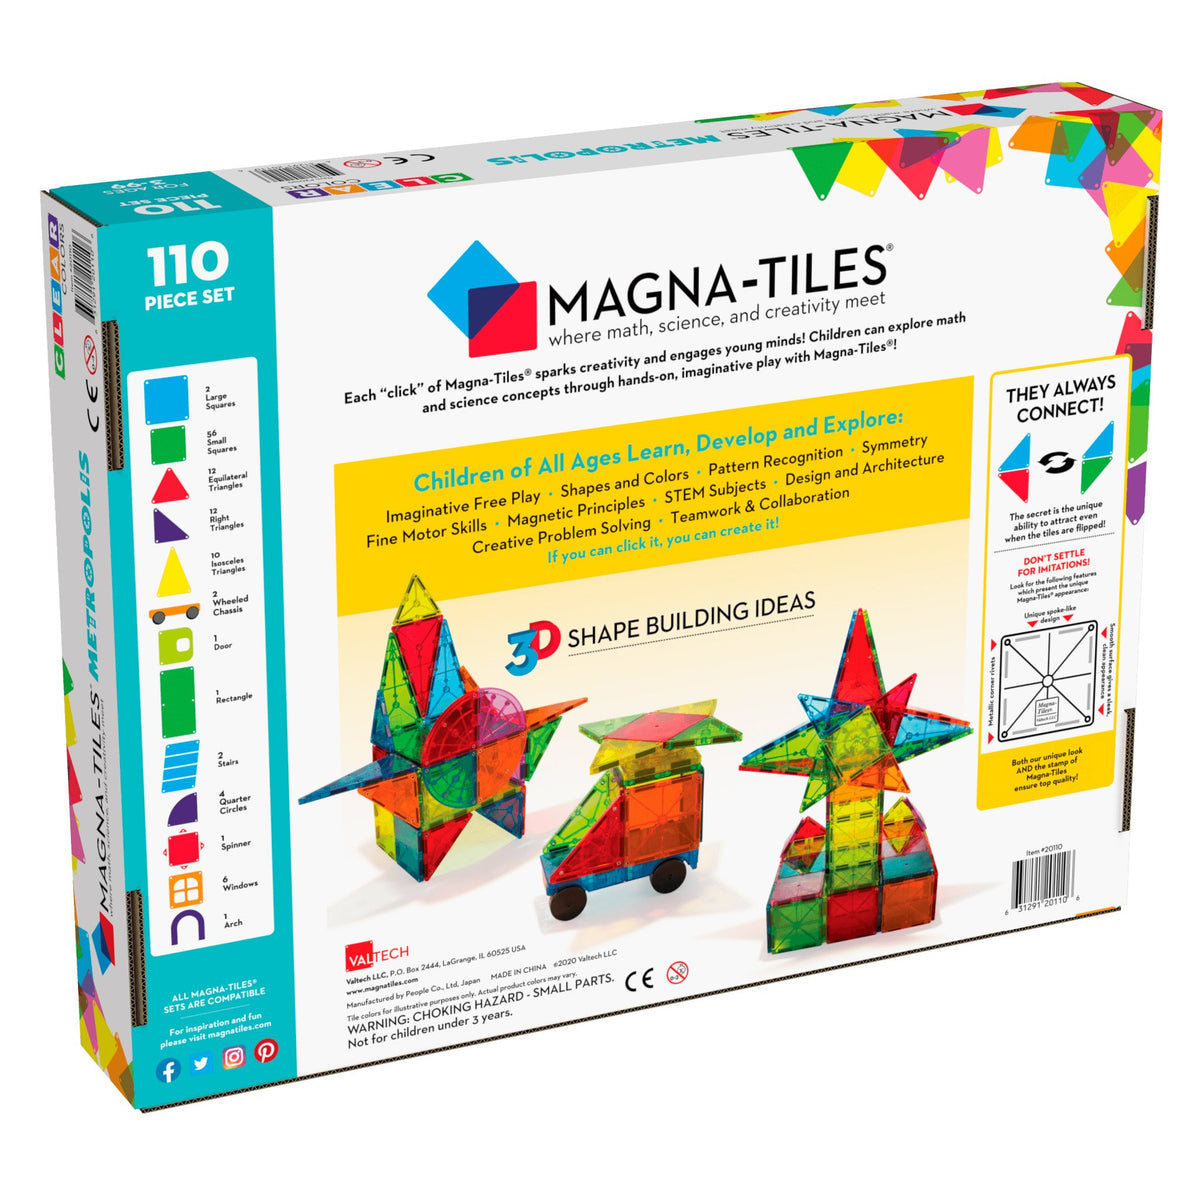 Magna-Tiles Tiles Metropolis 110-Piece Set